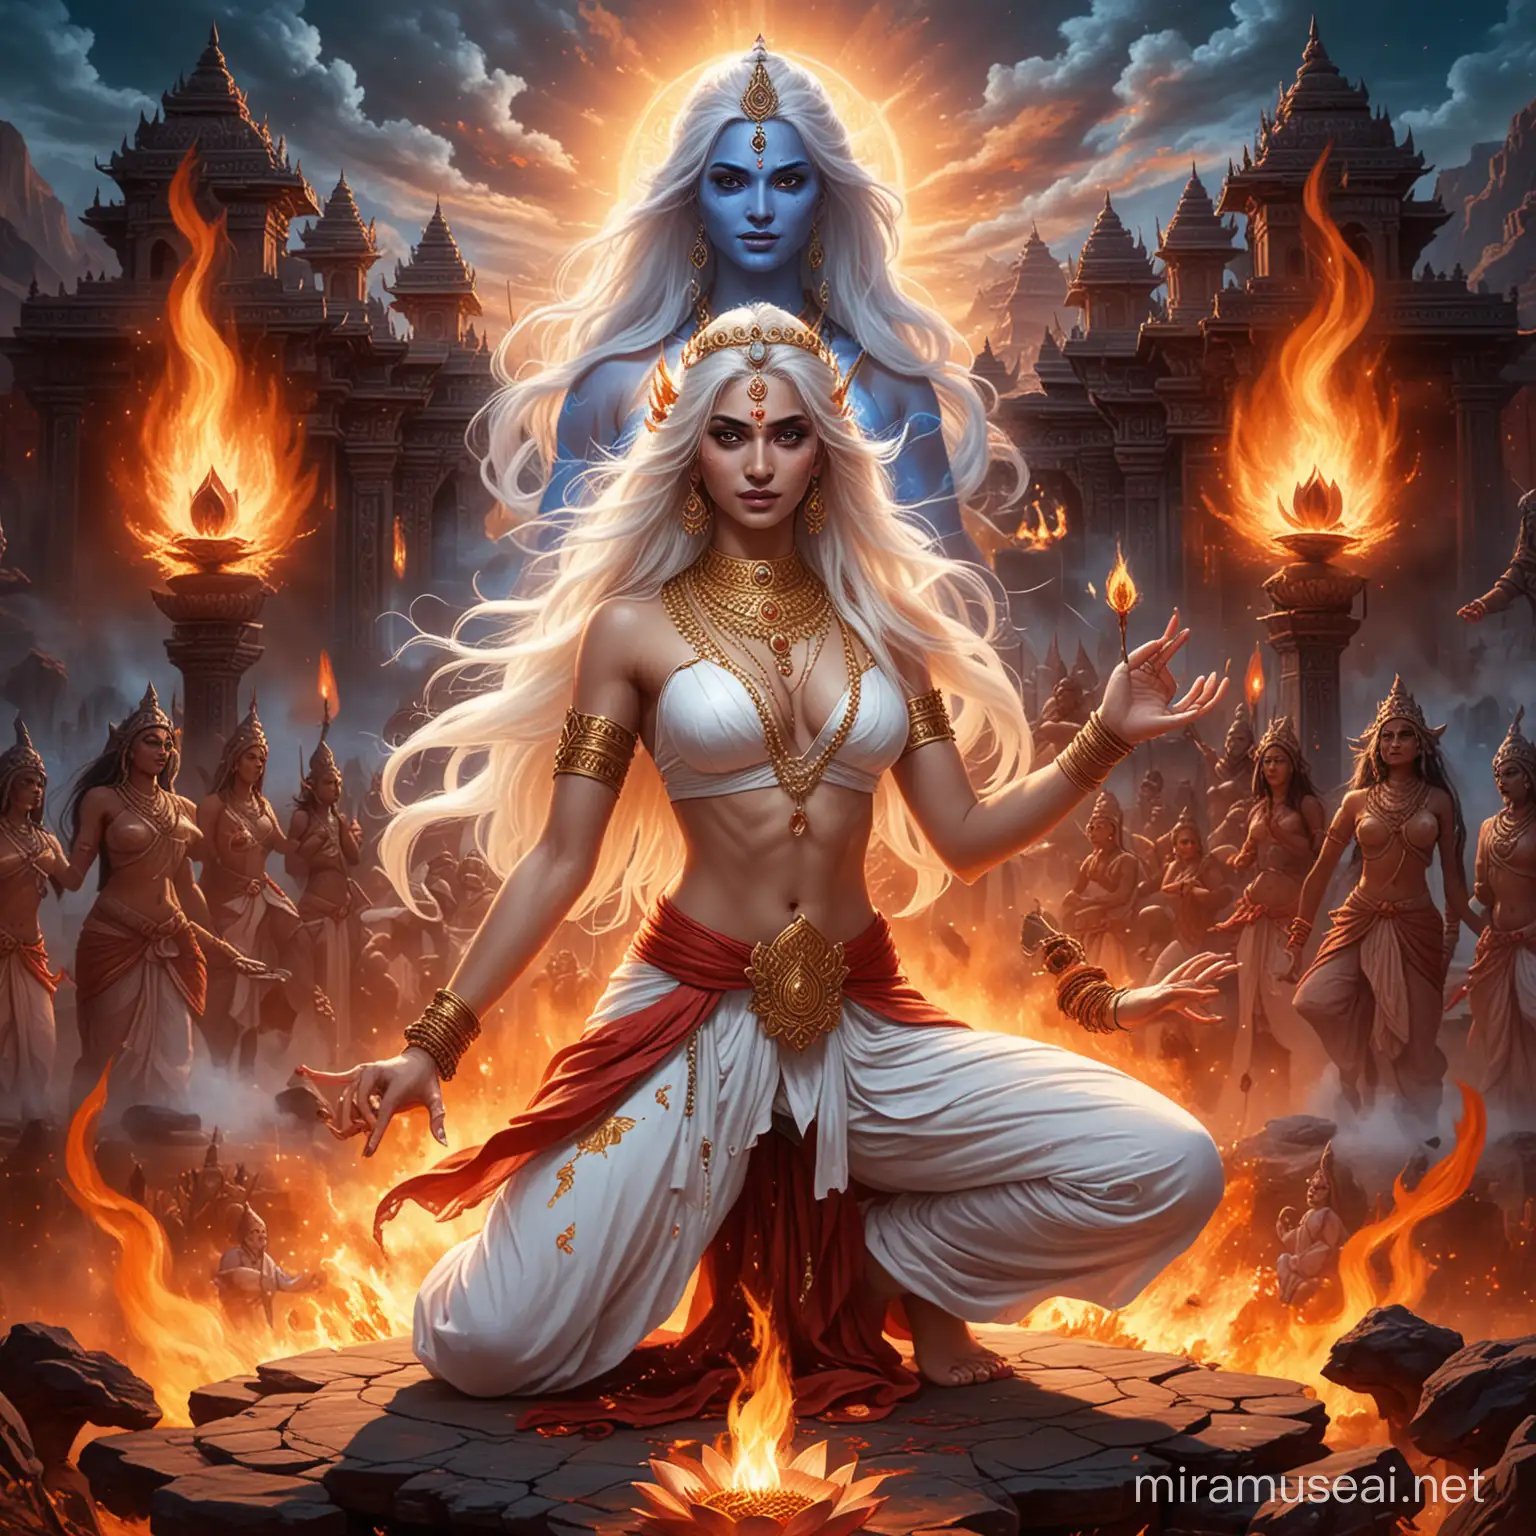 Fierce Hindu Empress Summoning Fire with Demonic Goddesses in Dark Valley